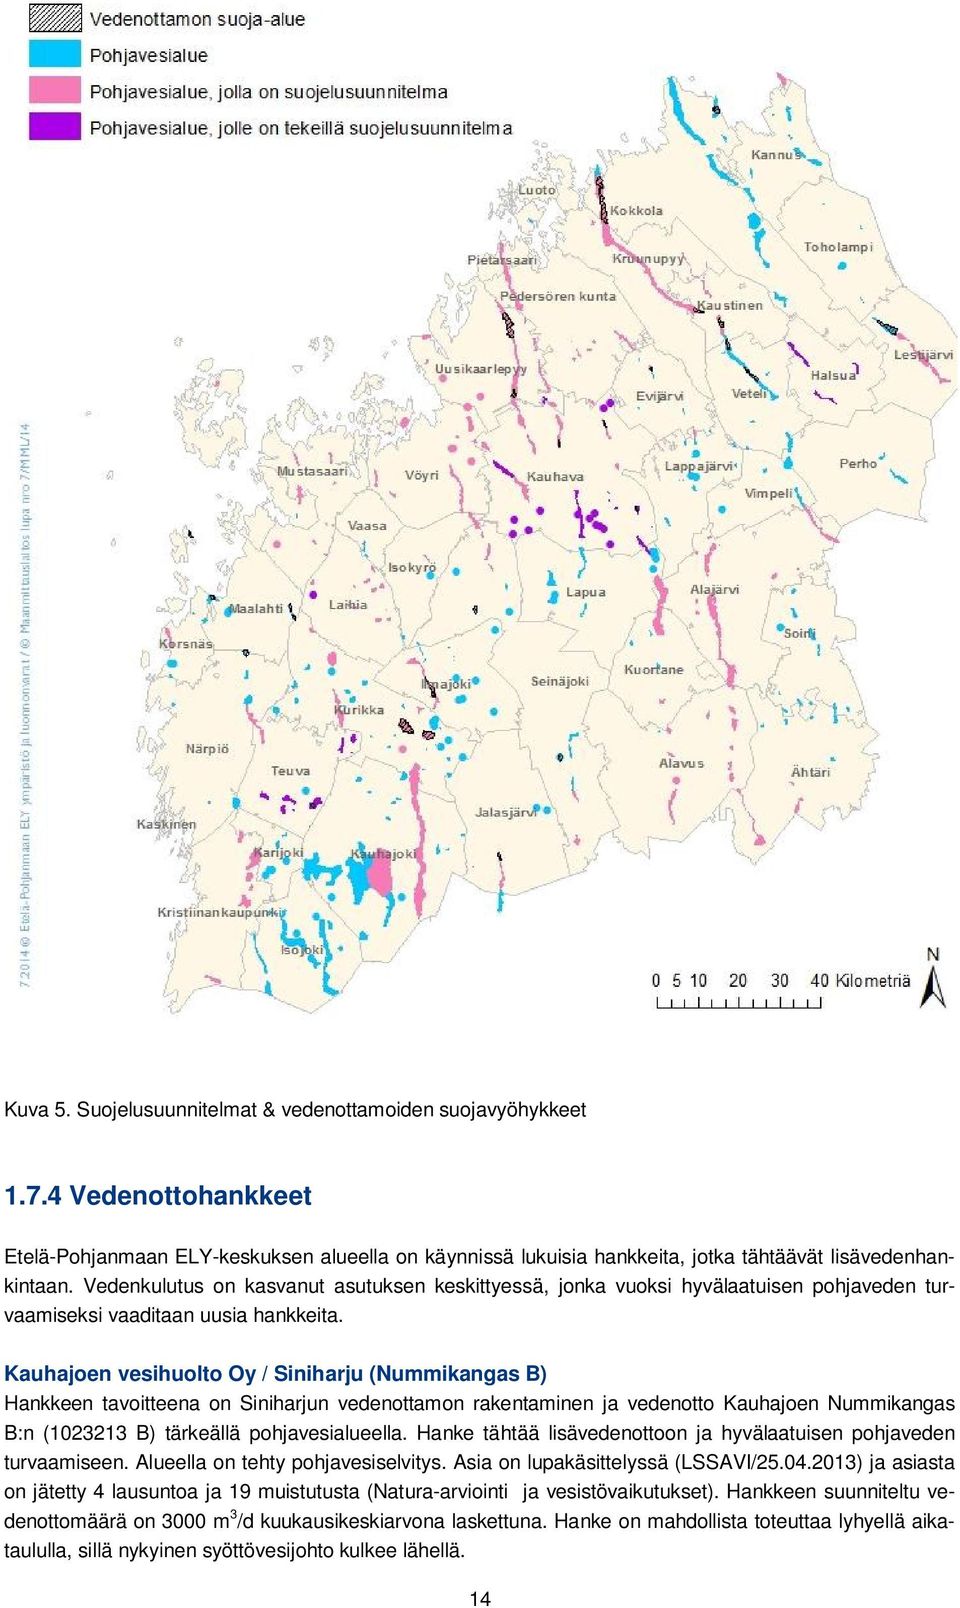 Kauhajoen vesihuolto Oy / Siniharju (Nummikangas B) Hankkeen tavoitteena on Siniharjun vedenottamon rakentaminen ja vedenotto Kauhajoen Nummikangas B:n (1023213 B) tärkeällä pohjavesialueella.